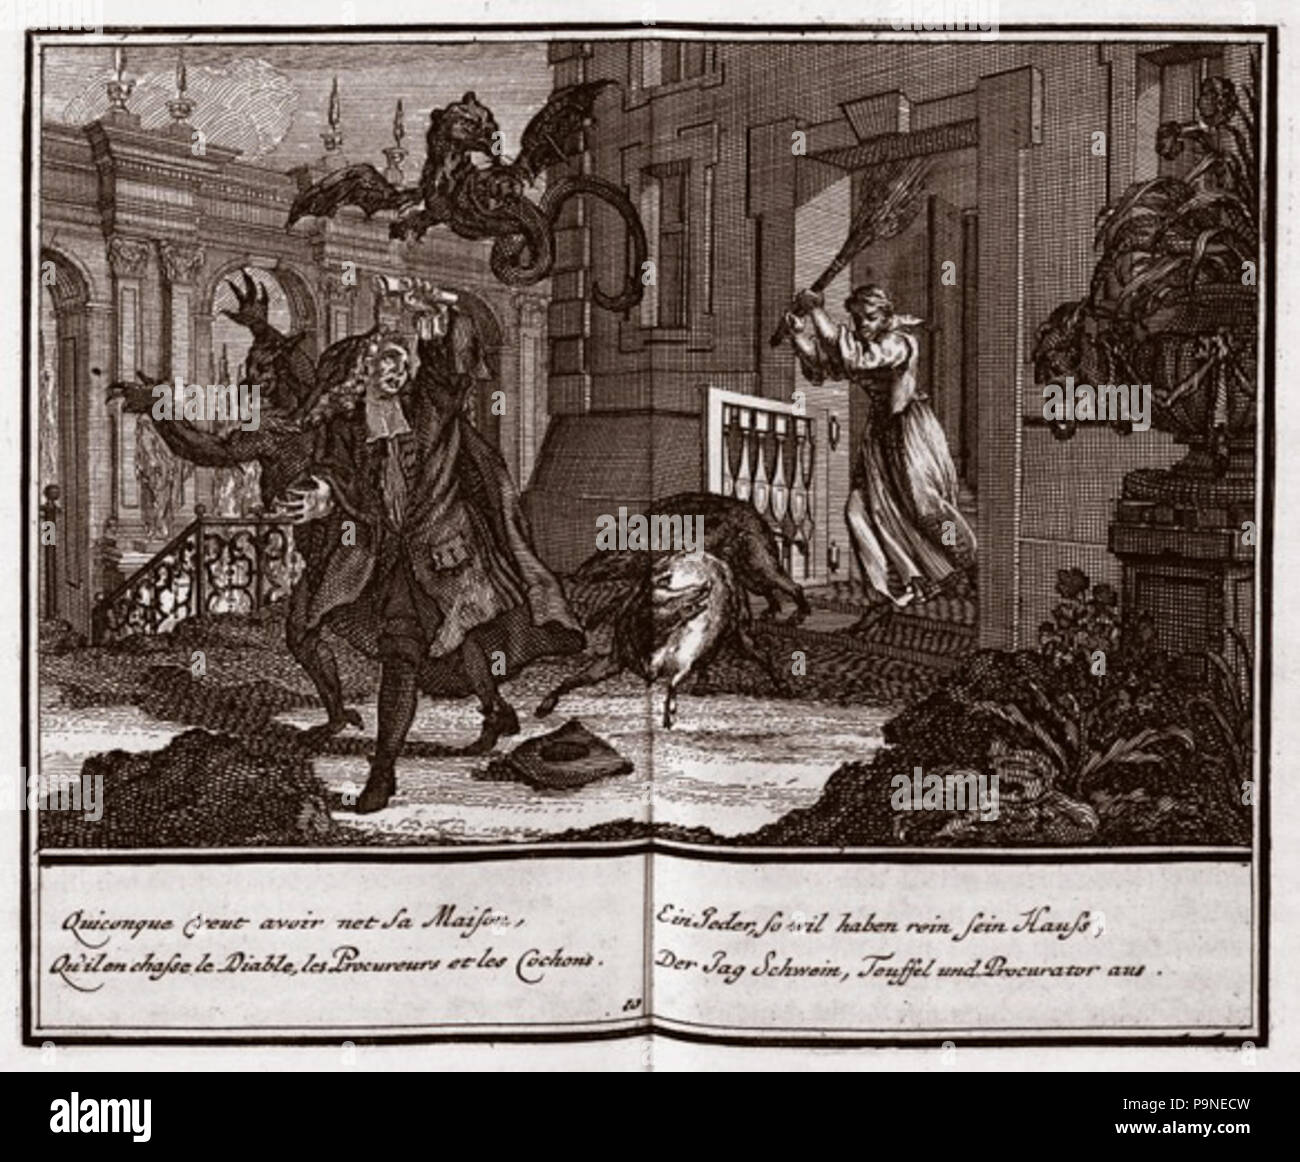 8 (10.) Ďábel, prase a prokurátor, ilustrace z knihy Litis abusus, 1726  Stock Photo - Alamy